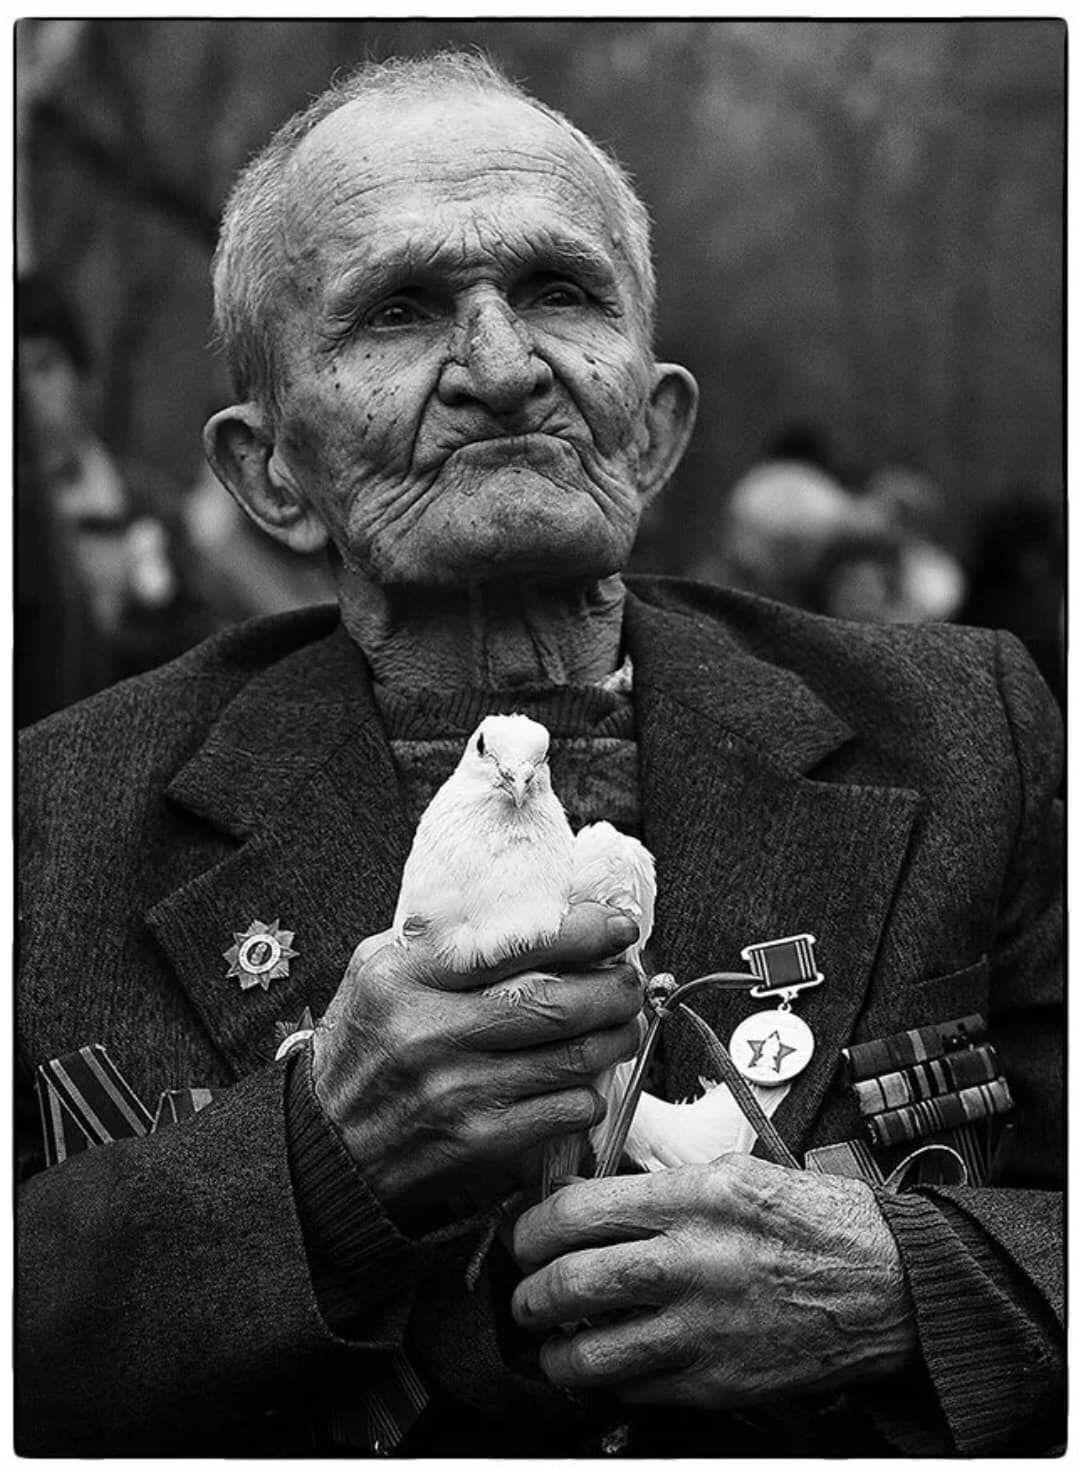 Черно белое фото день победы 1945